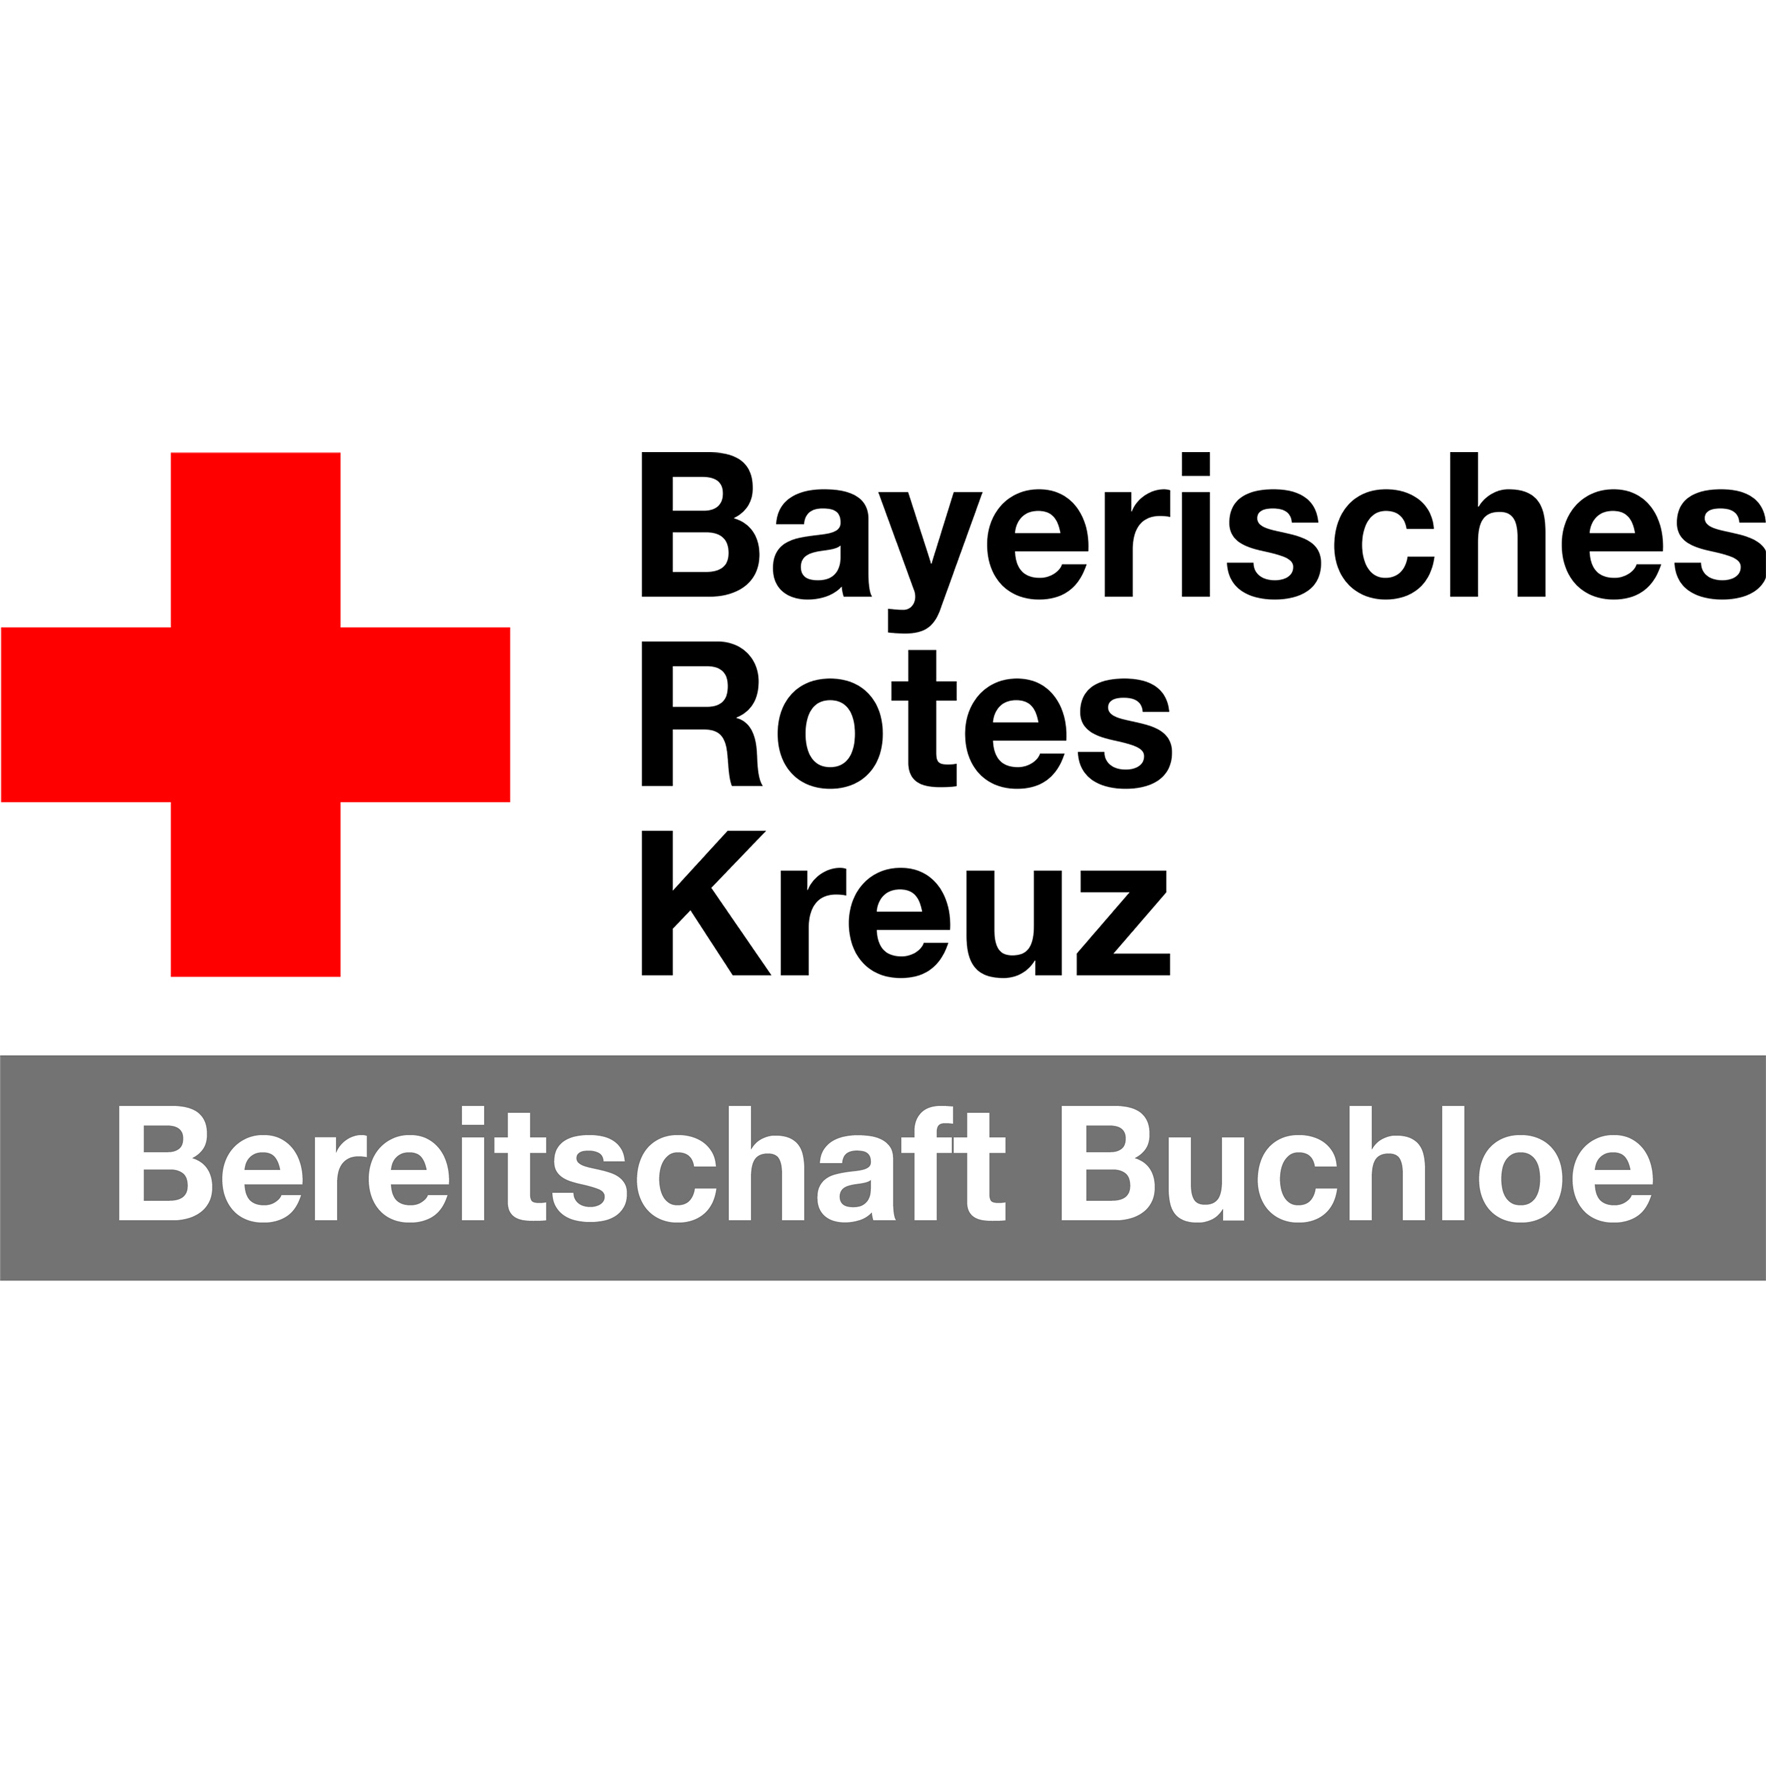 Bayerisches Rotes Kreuz Bereitschaft Buchloe: Donate to our organisation  ()